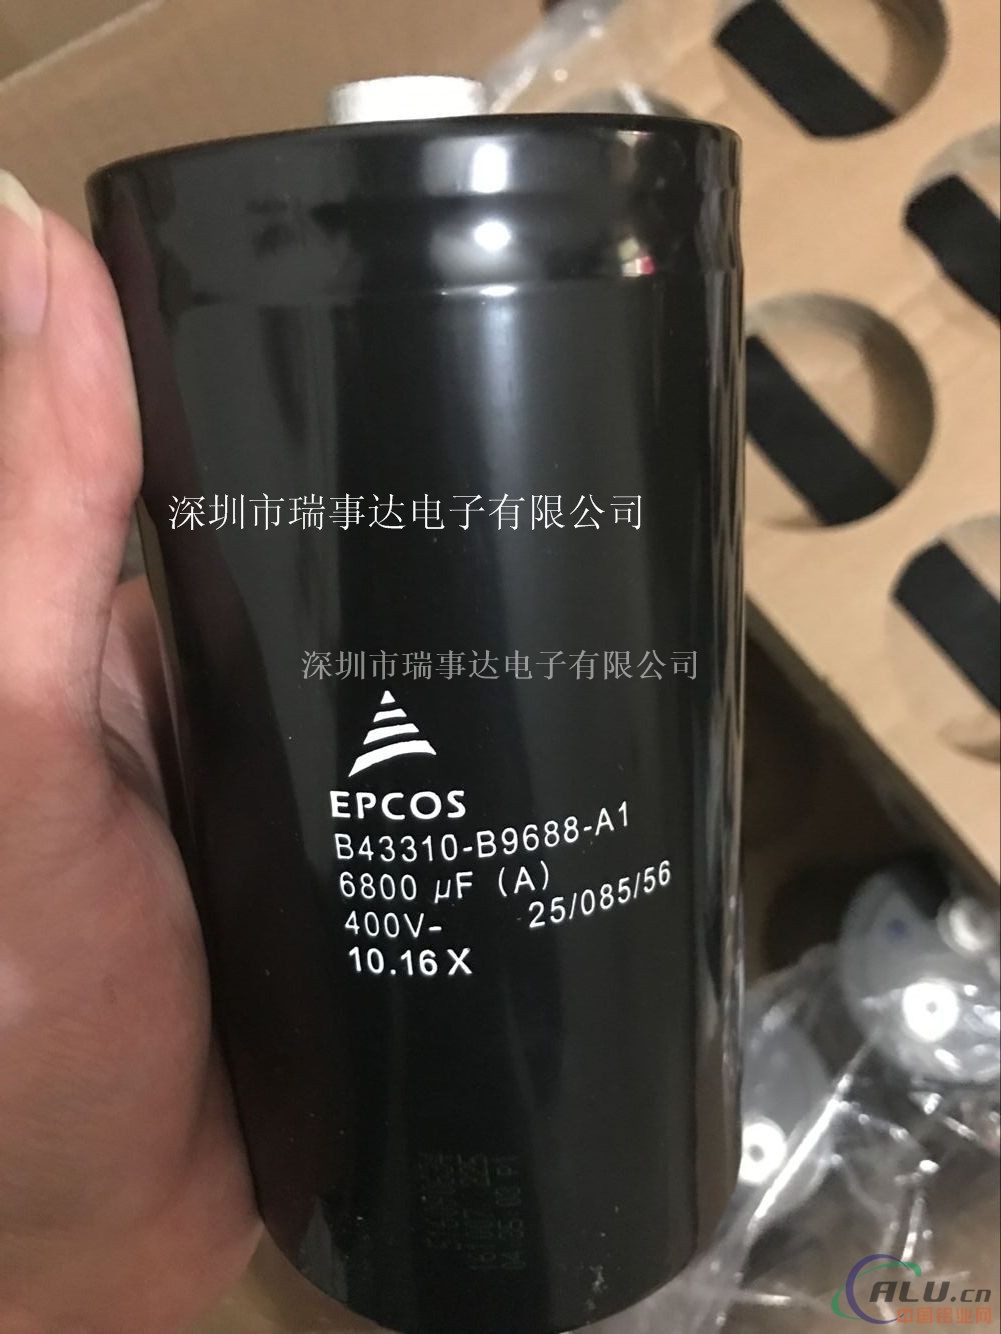 EPCOS B43310-B9688-A1铝电容器6800uF400V